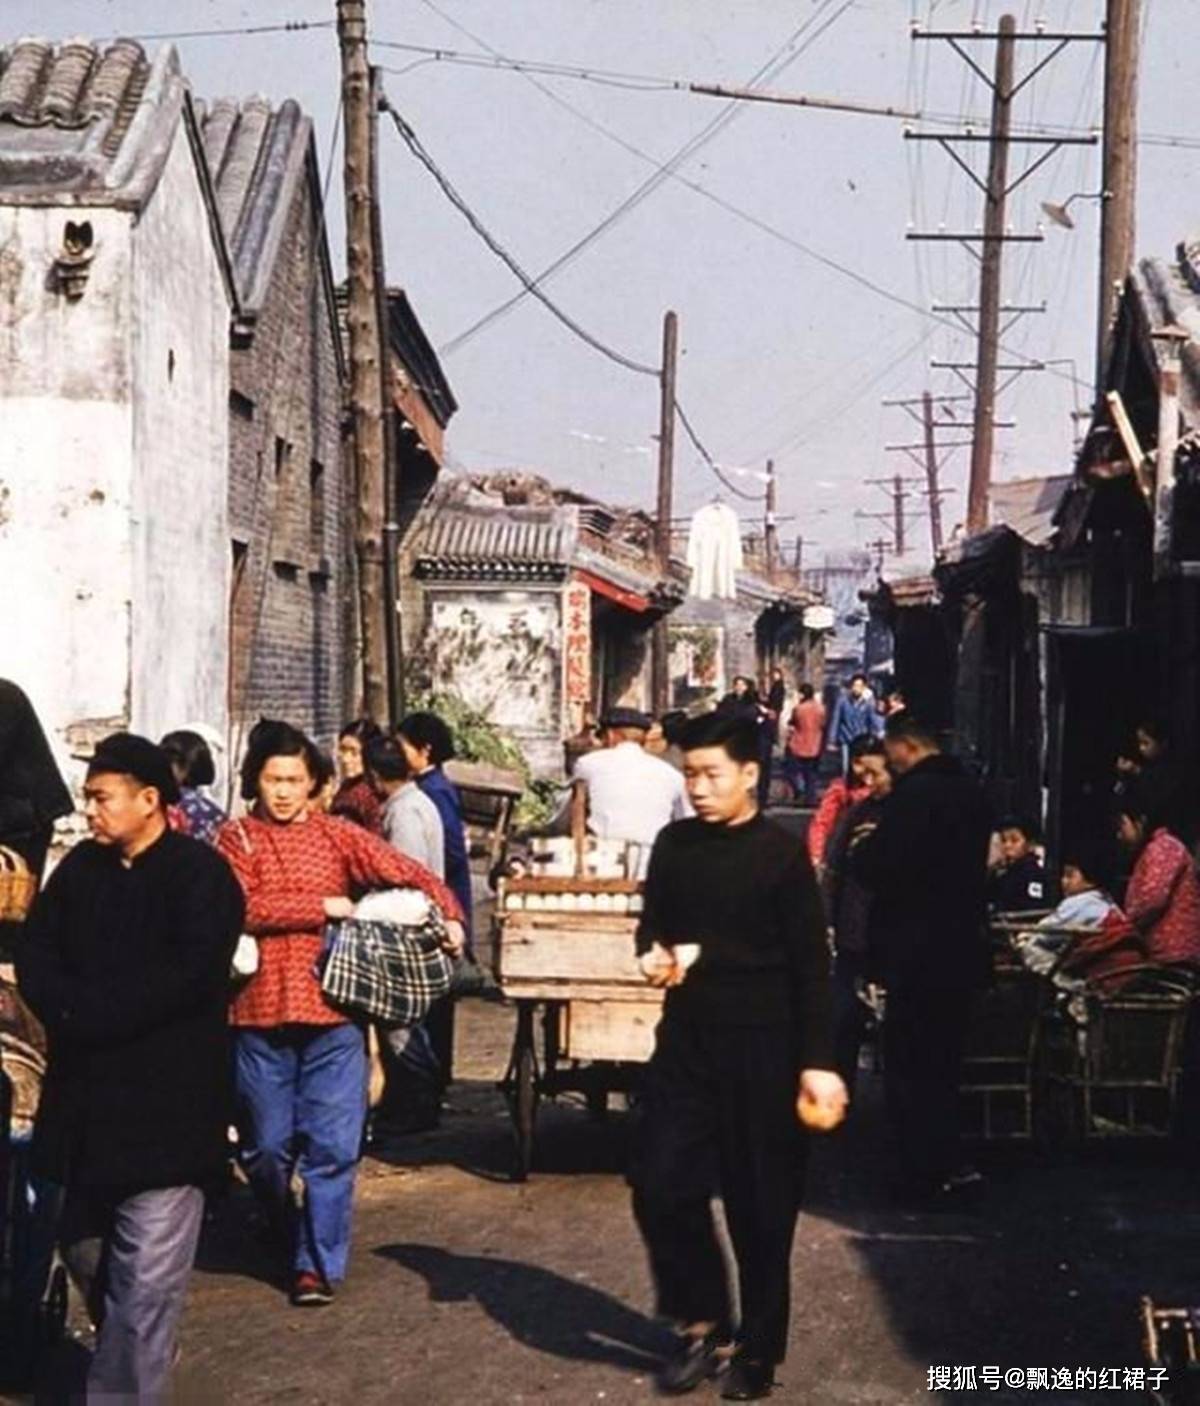 老照片:1950年代的北京胡同,这才是原汁原味的老北京生活